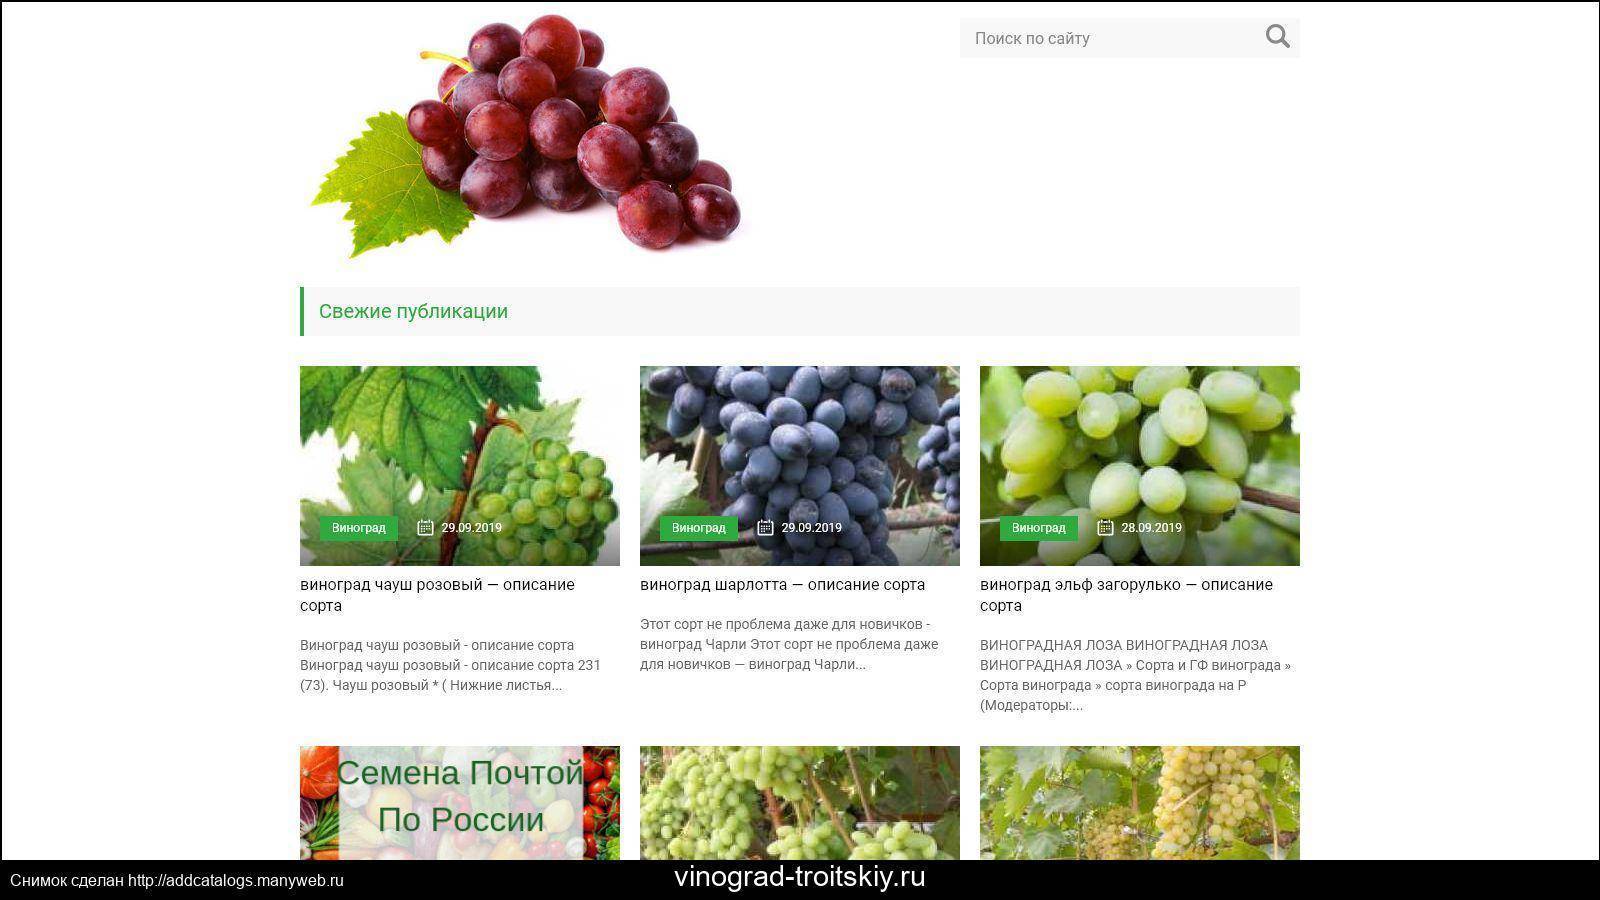 Сорт гелиос — новый столовый виноград